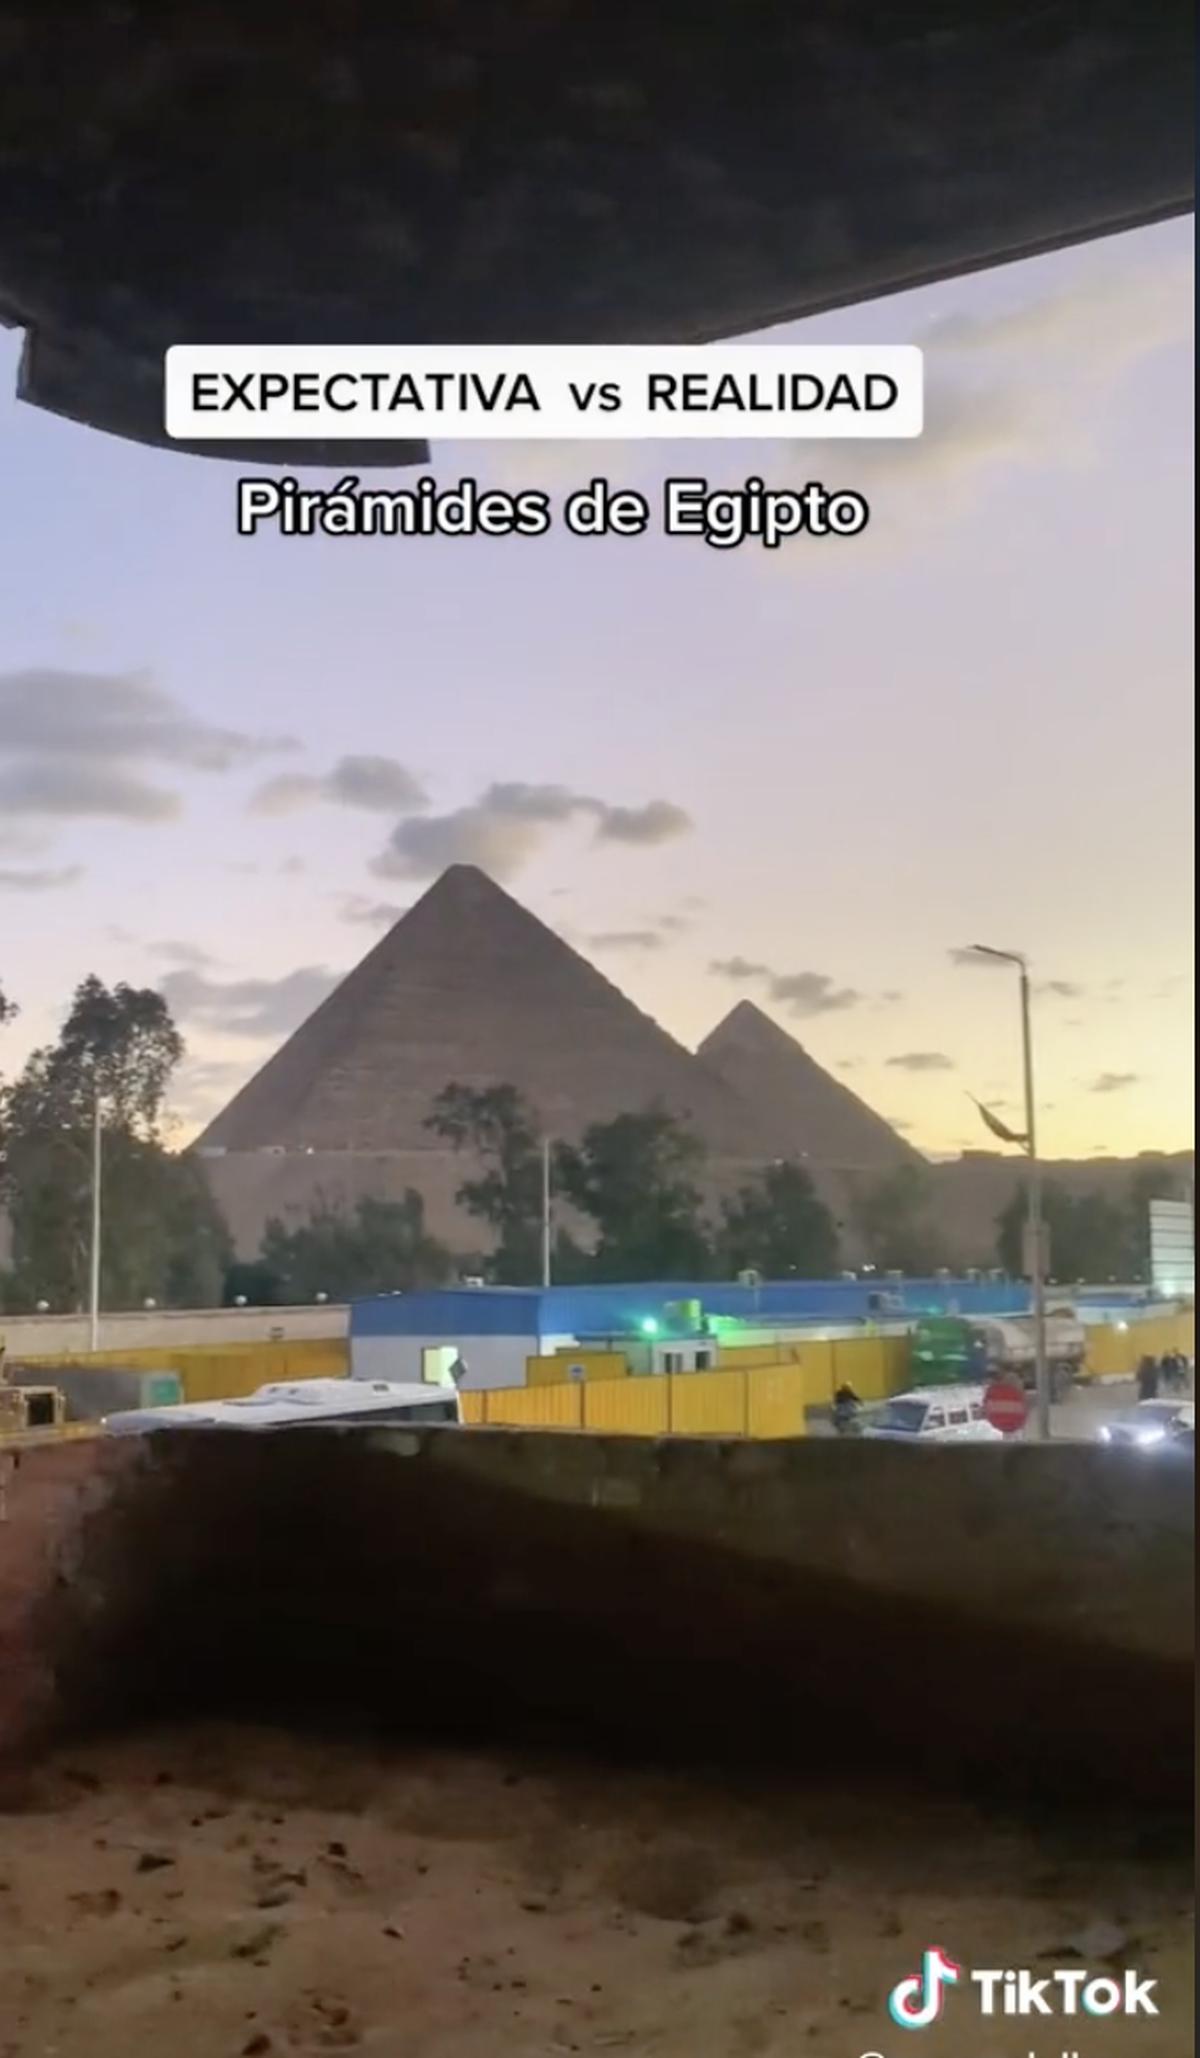  | Las Pirámides de Egipto tienen en sus costados una ciudad normal.